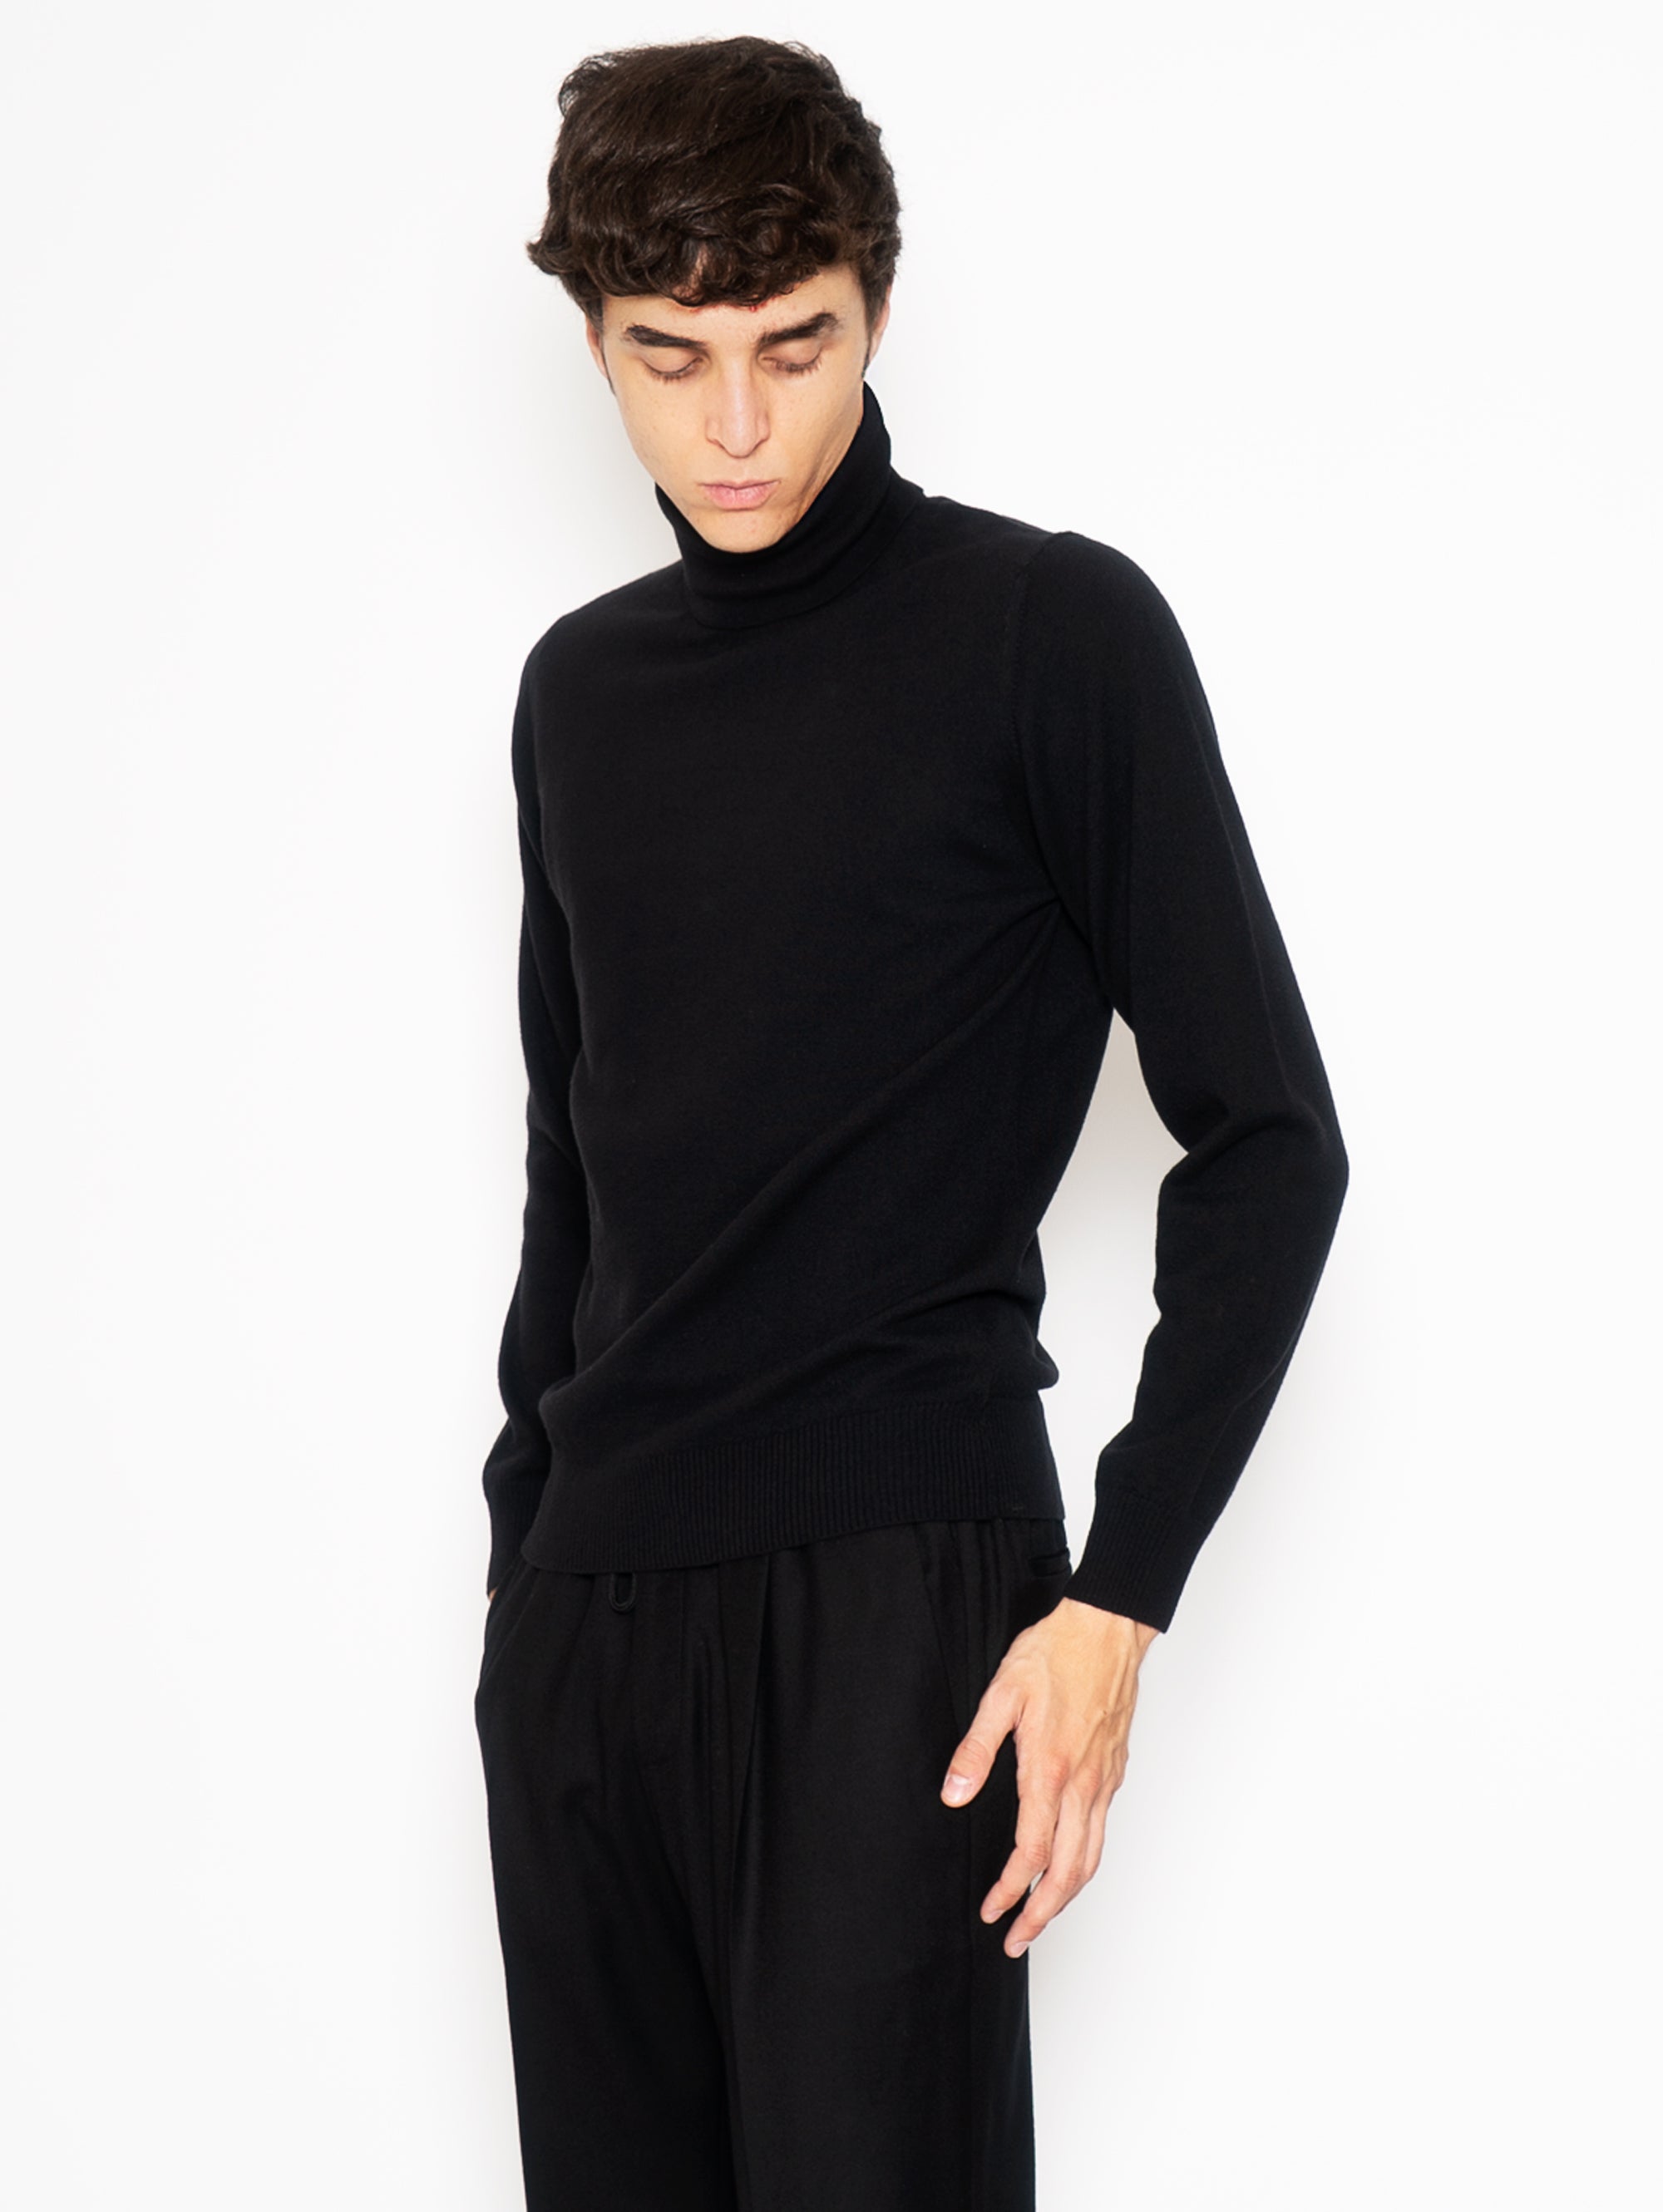 Schwarzer Pullover mit hohem Kragen